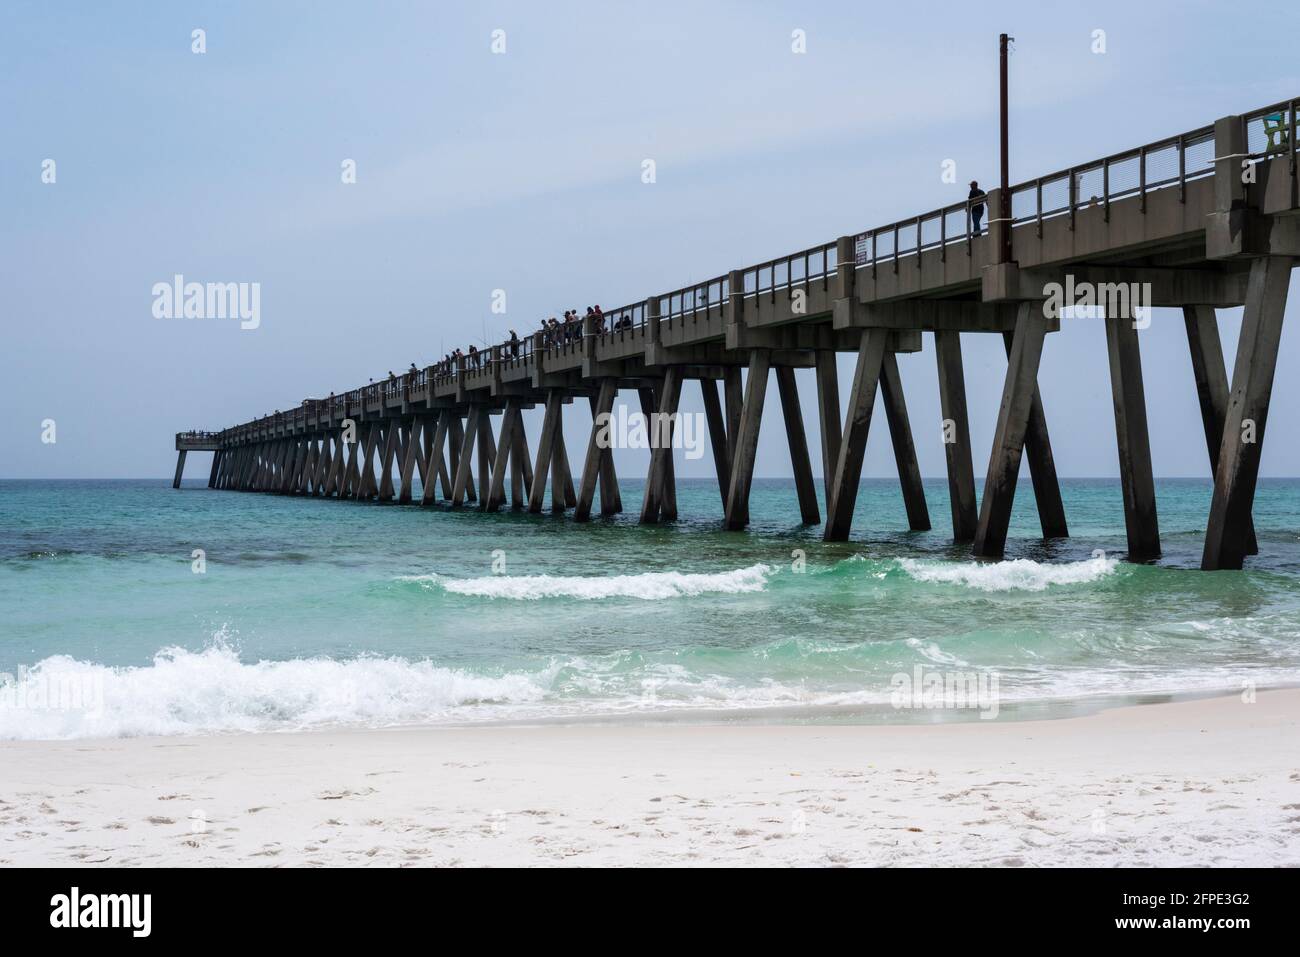 El Navarre Beach Fishing Pier en Florida se extiende al Golfo de México en una imagen capturada el 30 de abril de 2021. Foto de stock